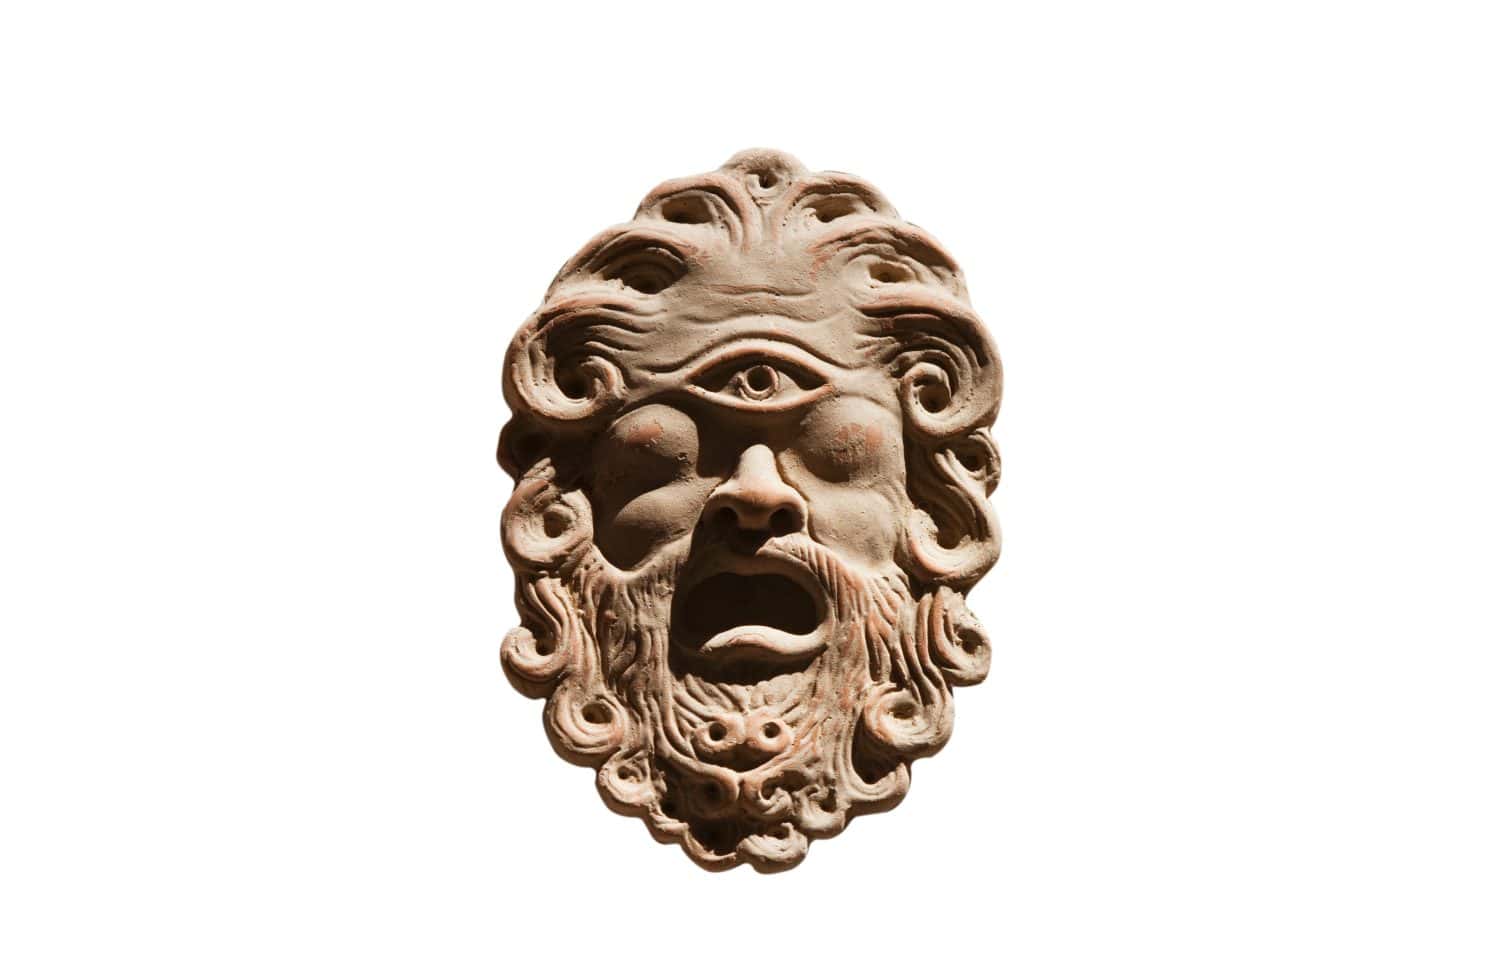 Polyphemus greek mask odyssey one eye on white background